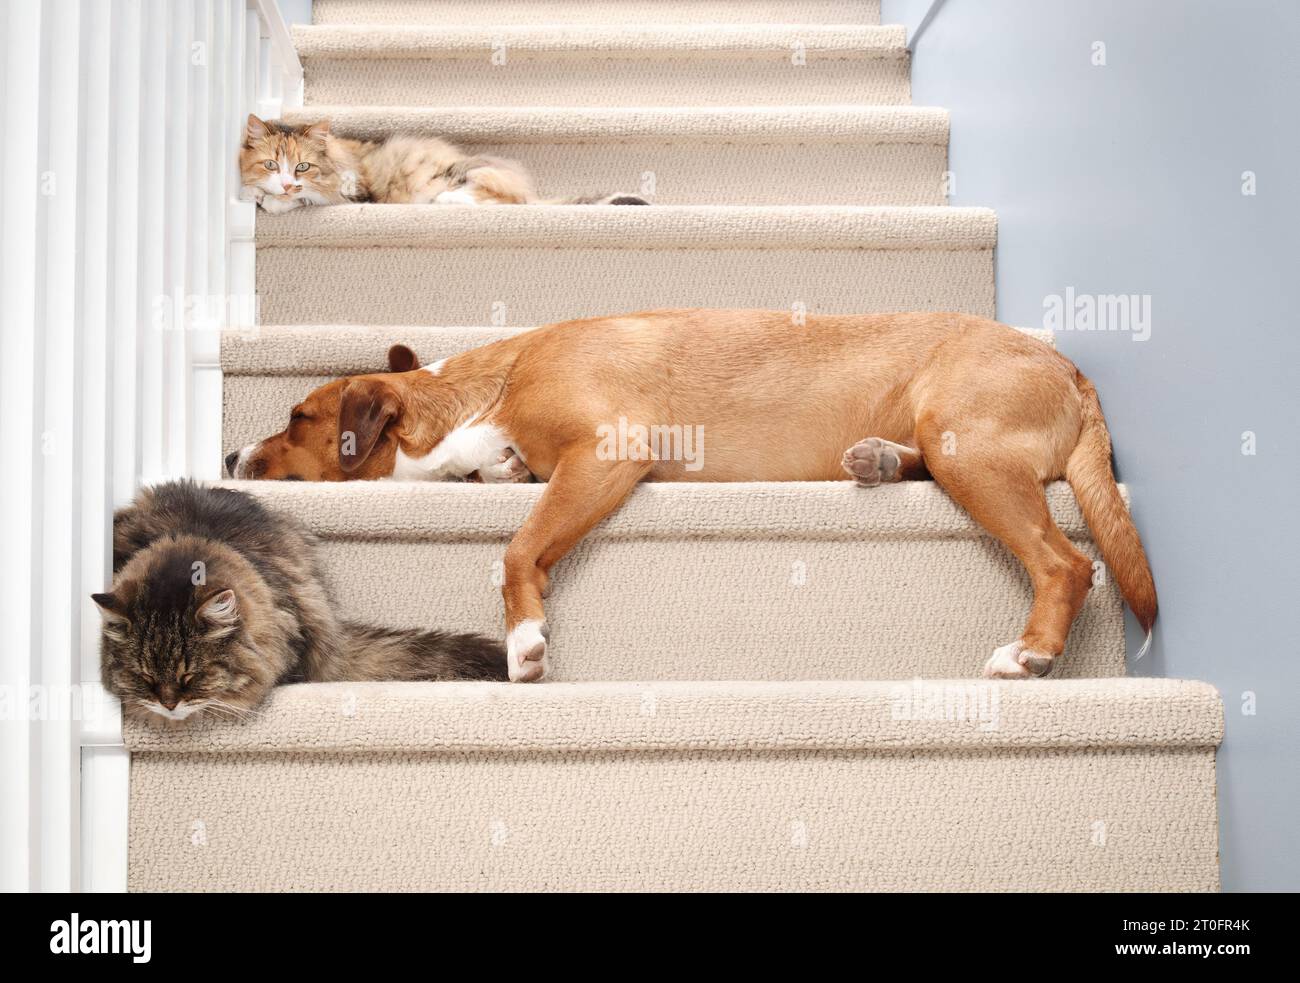 Chats et chien dormant ensemble dans les escaliers à l'intérieur. Chats mignons et grand chien appréciant la compagnie. Animaux de compagnie espèces cohabitation et unité. Calico ca Banque D'Images